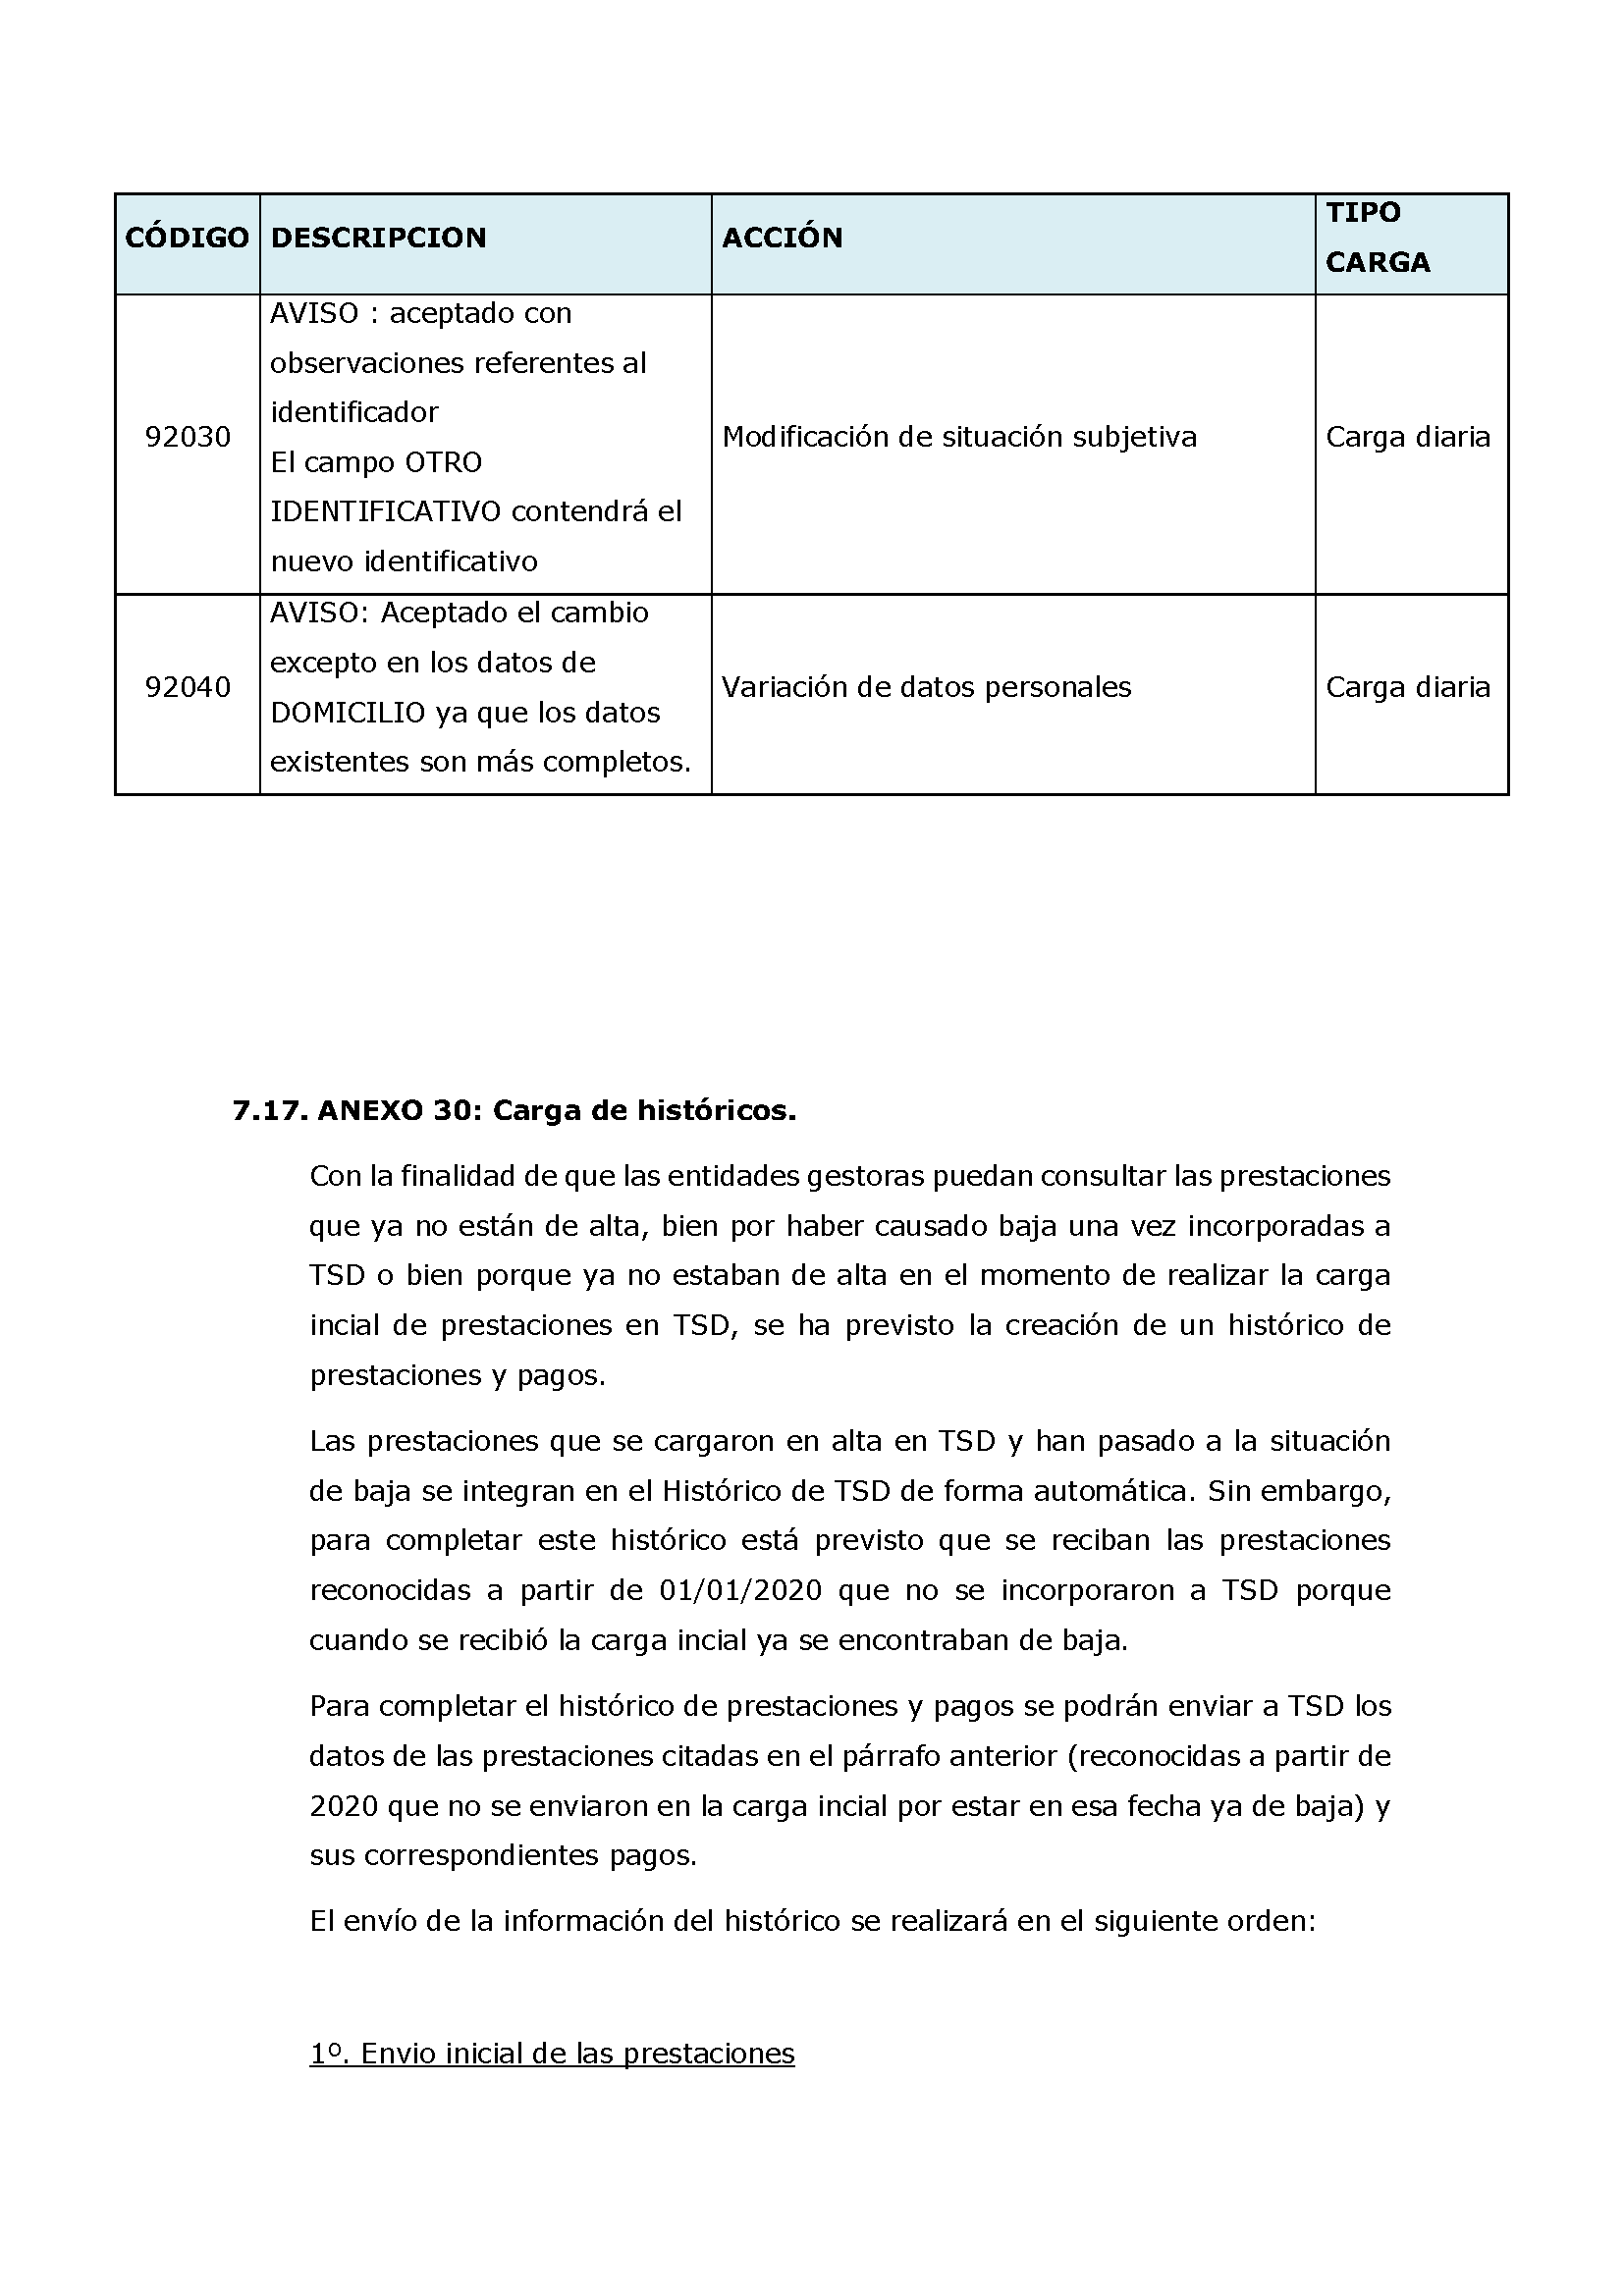 ANEXOS PROTOCOLO DE INTERCAMBIO DE FICHEROS PARA LA CARGA DE DATOS EN TARJETA SOCIAL DIGITAL Pag 105